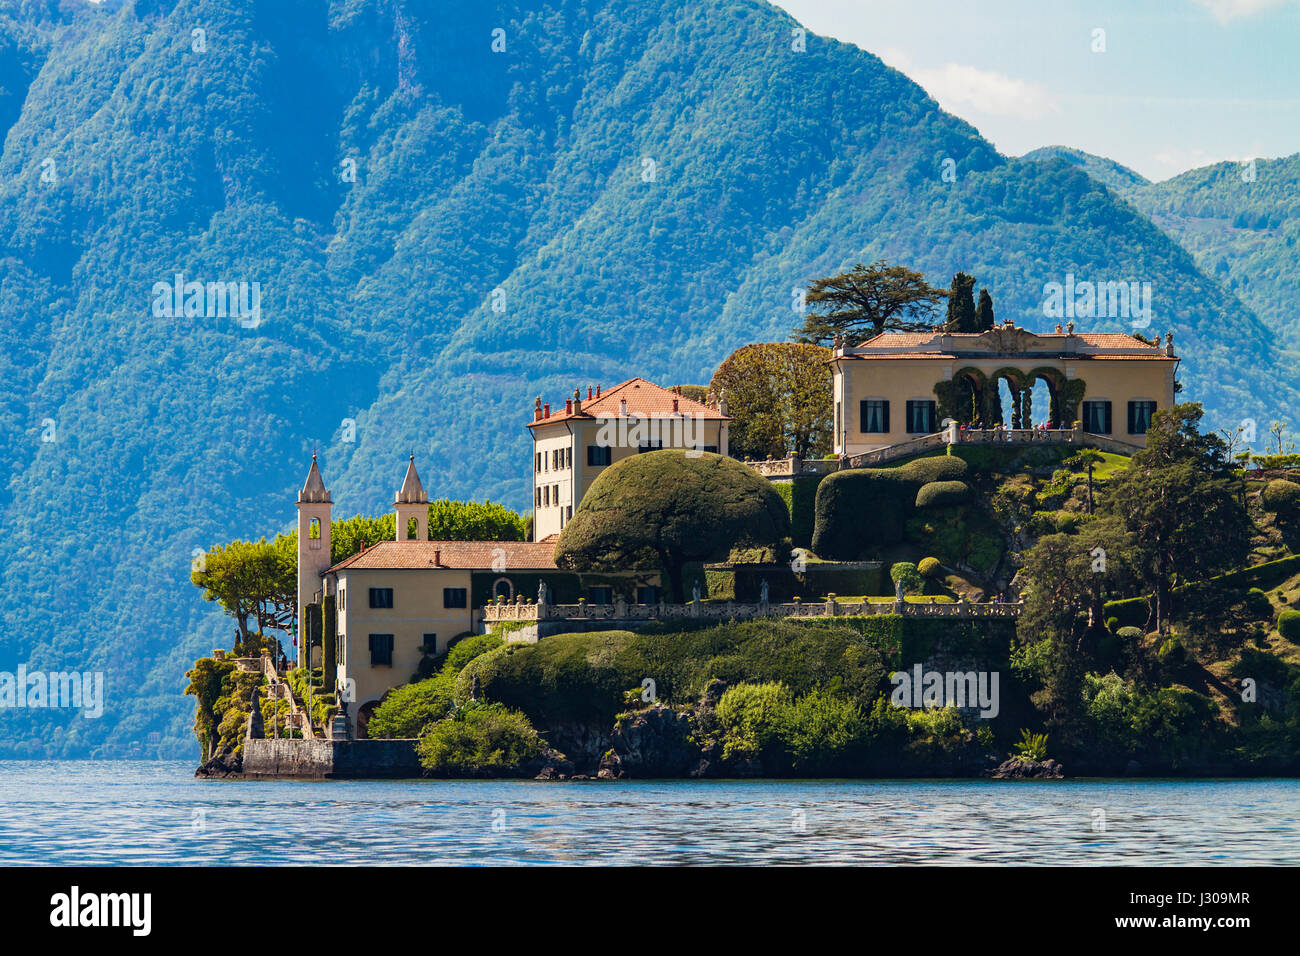 Villa del Balbianello on Lake Como in Italy Stock Photo